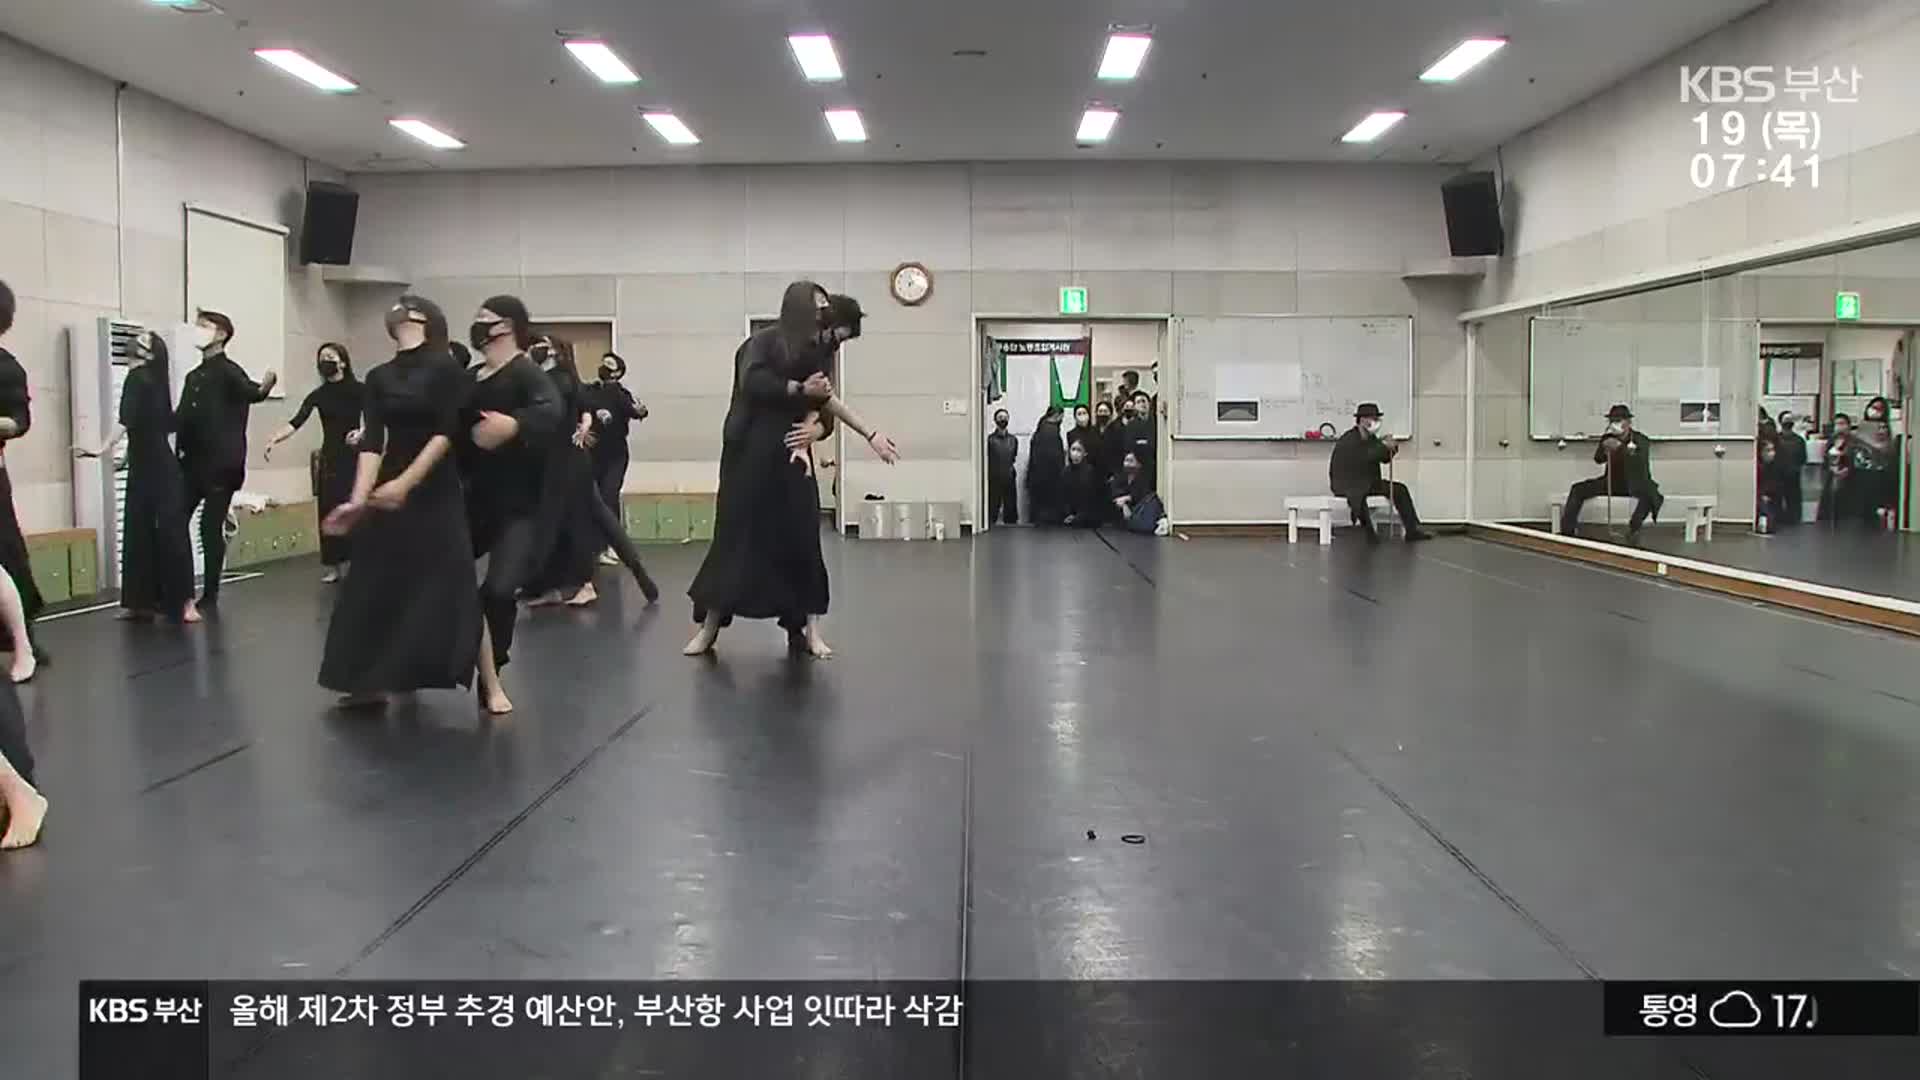 [문화톡톡] 부산 40계단…피란민 애환을 춤에 담다